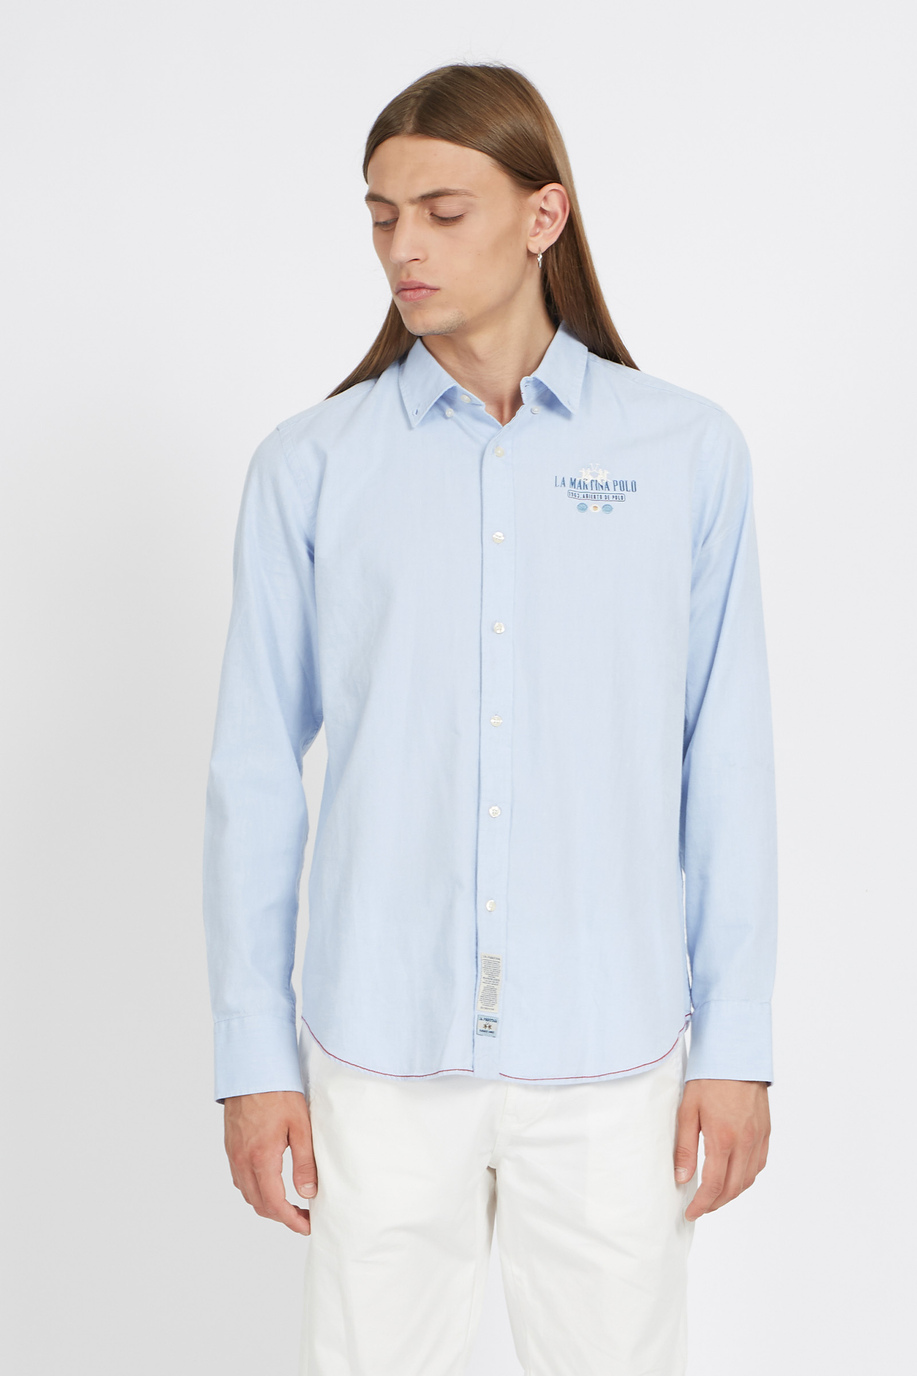 Regular Fit Herrenhemd aus Baumwolle mit langen Ärmeln - Vladan - Hemden | La Martina - Official Online Shop